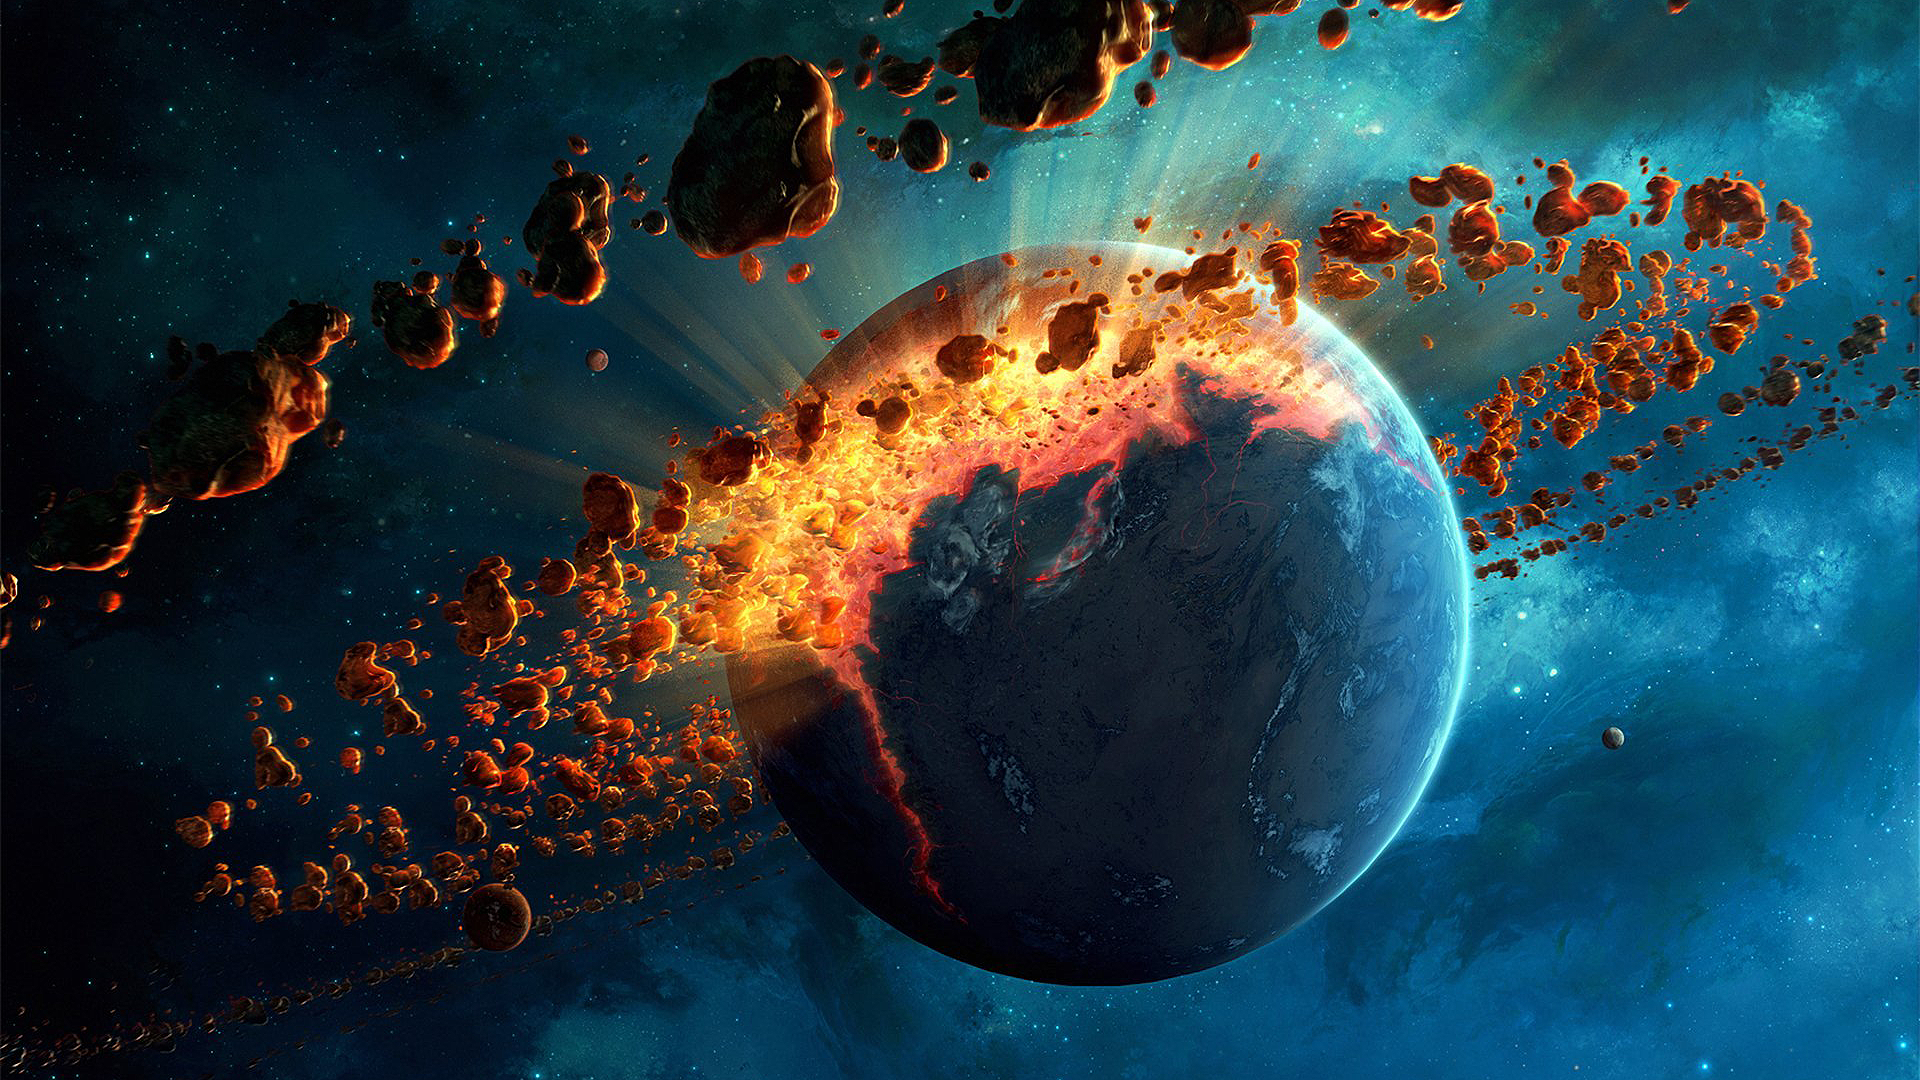 Erik Shoemaker Digital Art Artwork Space Art Planet Asteroids Stars Fire Destruction Earth 1920x1080